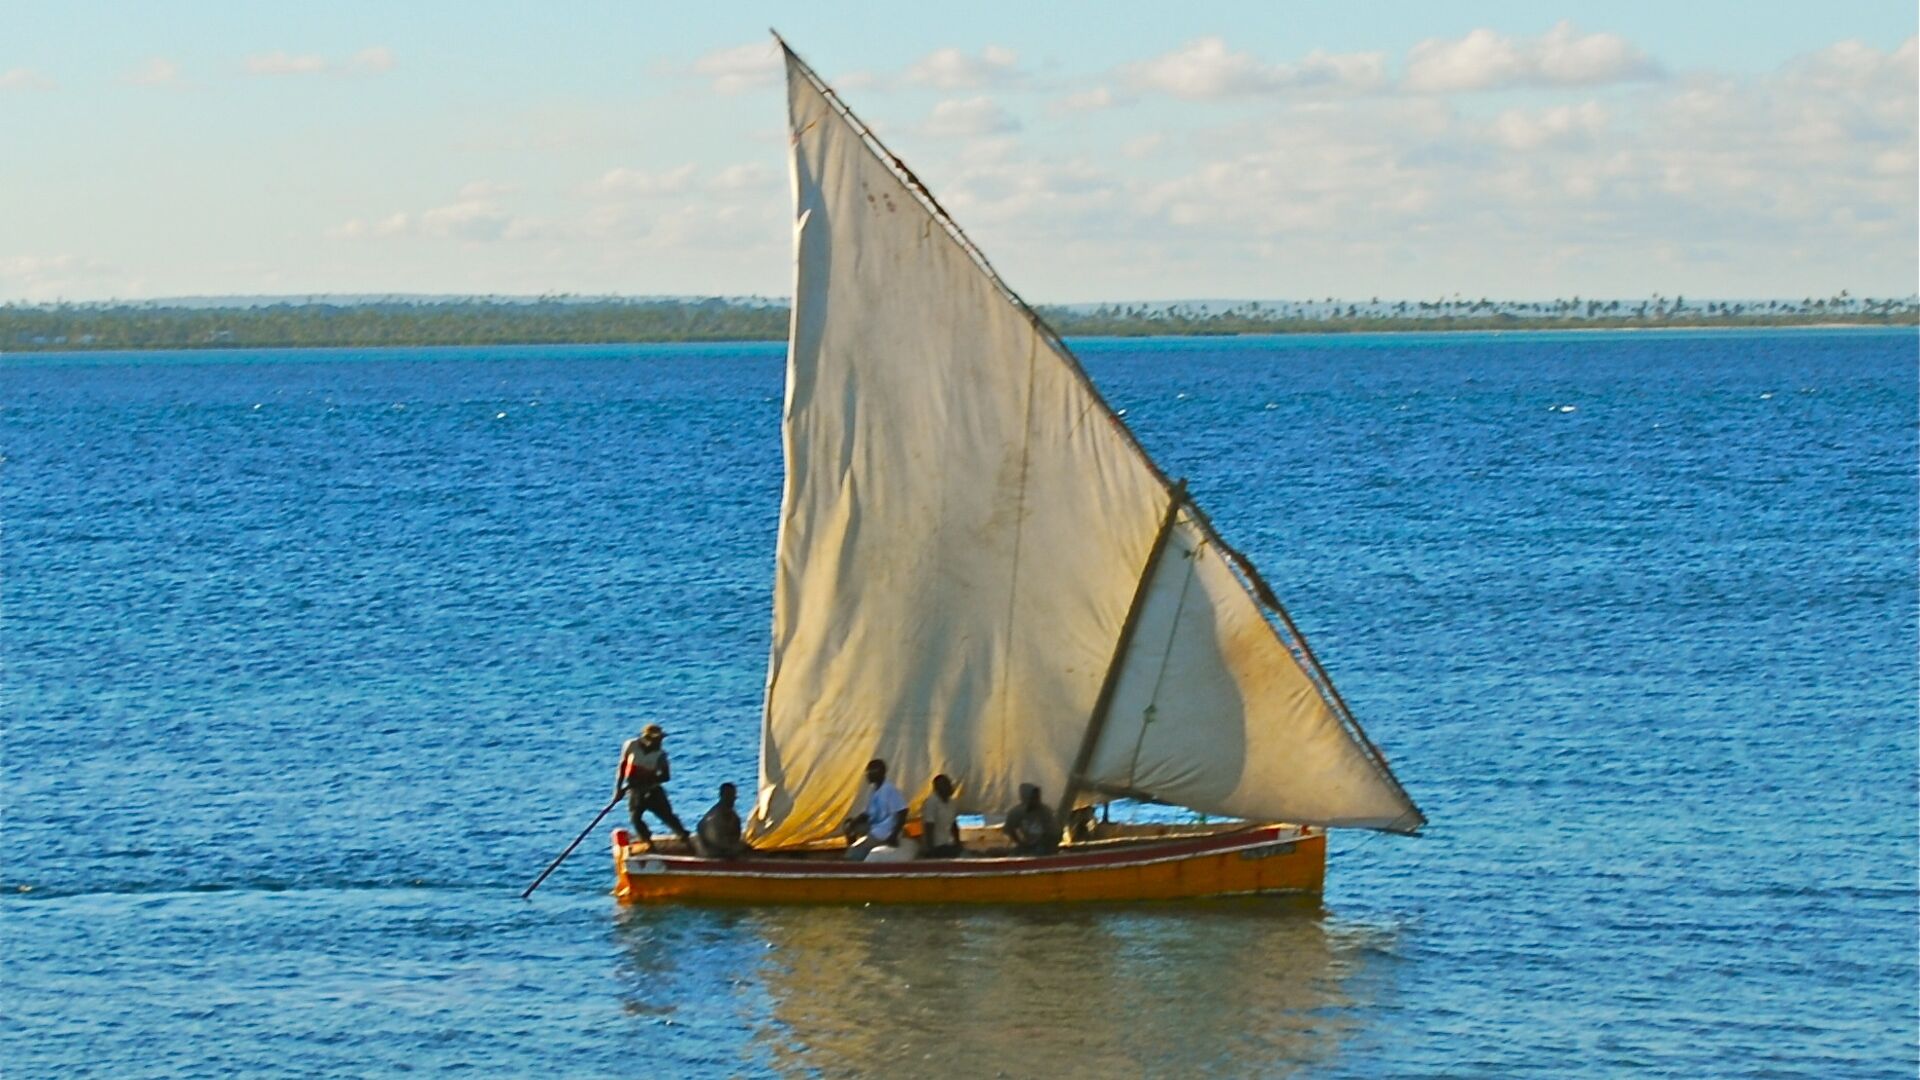 ブルー ピース: ダウ船は、水の保護に非常に積極的な国であるモザンビークの典型的な船です。